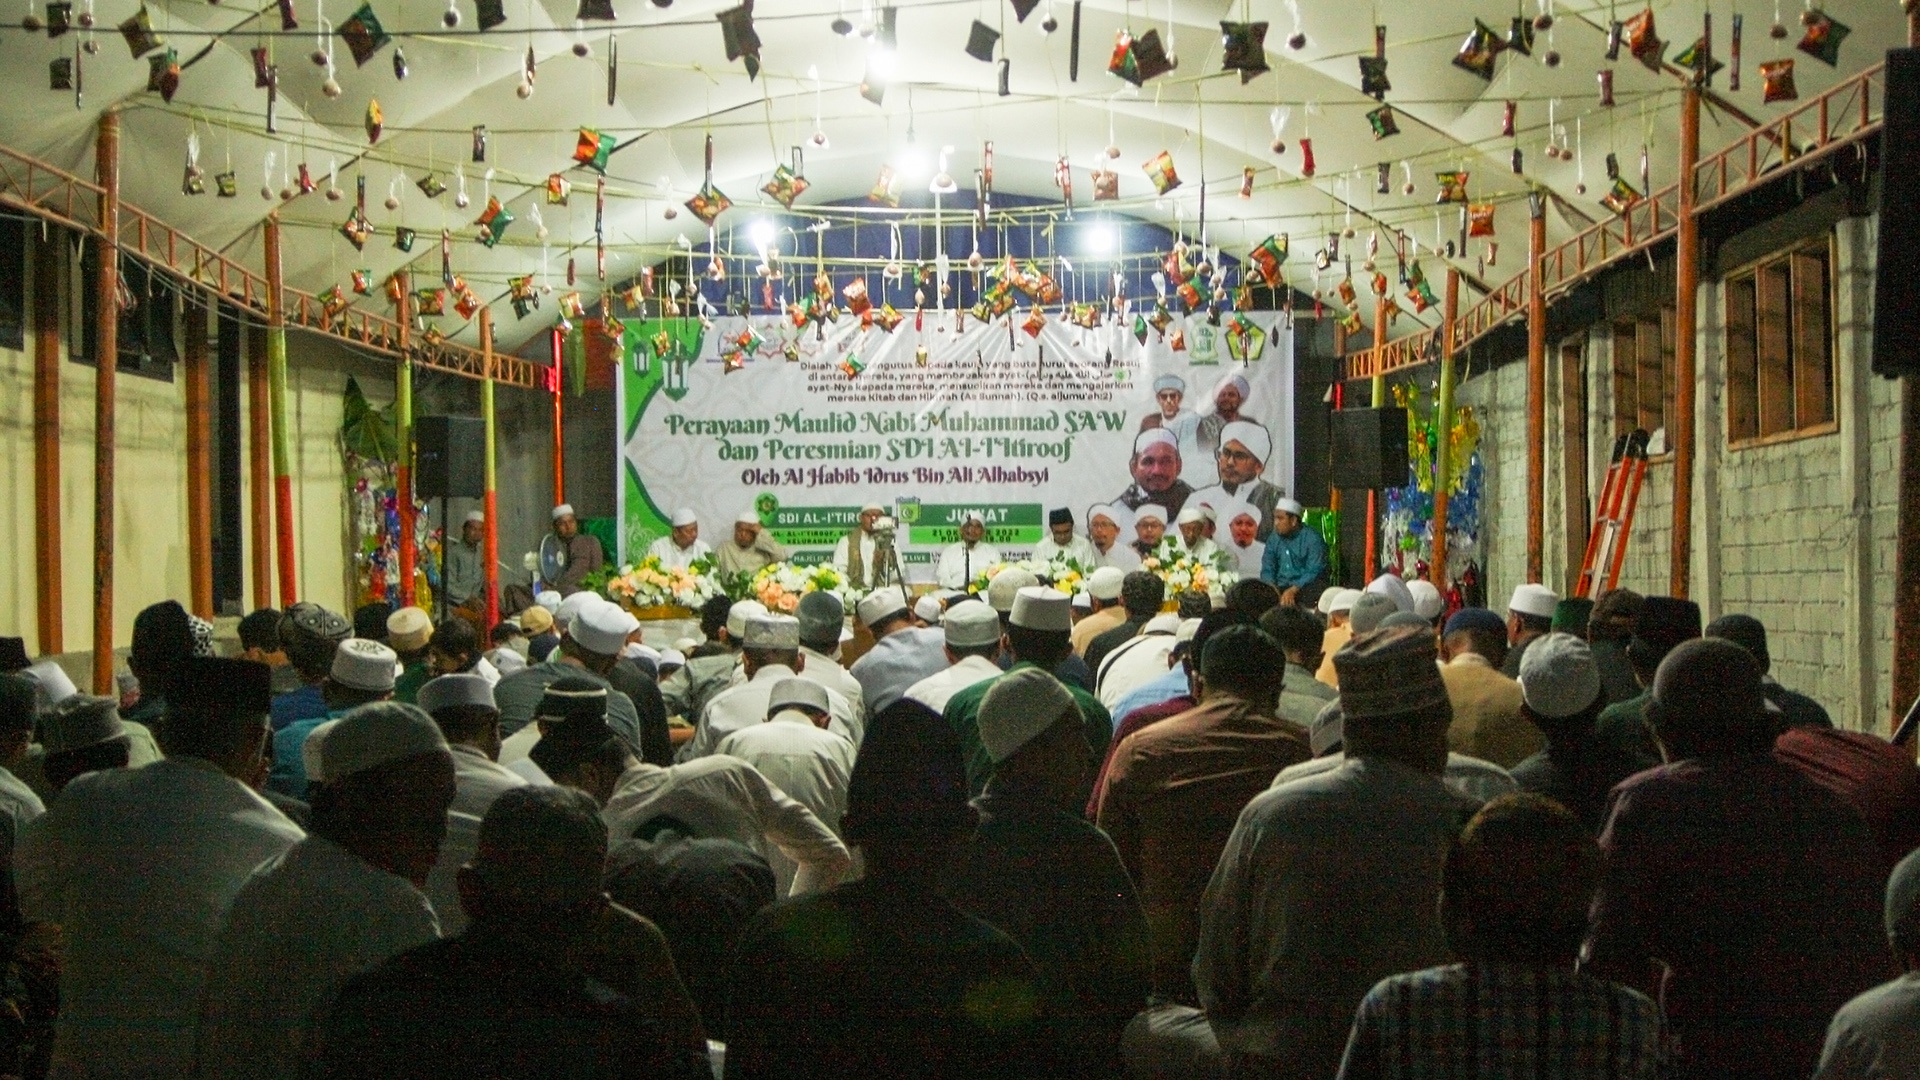 Viele Gläubige feiern Mevlid Kandili gemeinsam in Indonesien